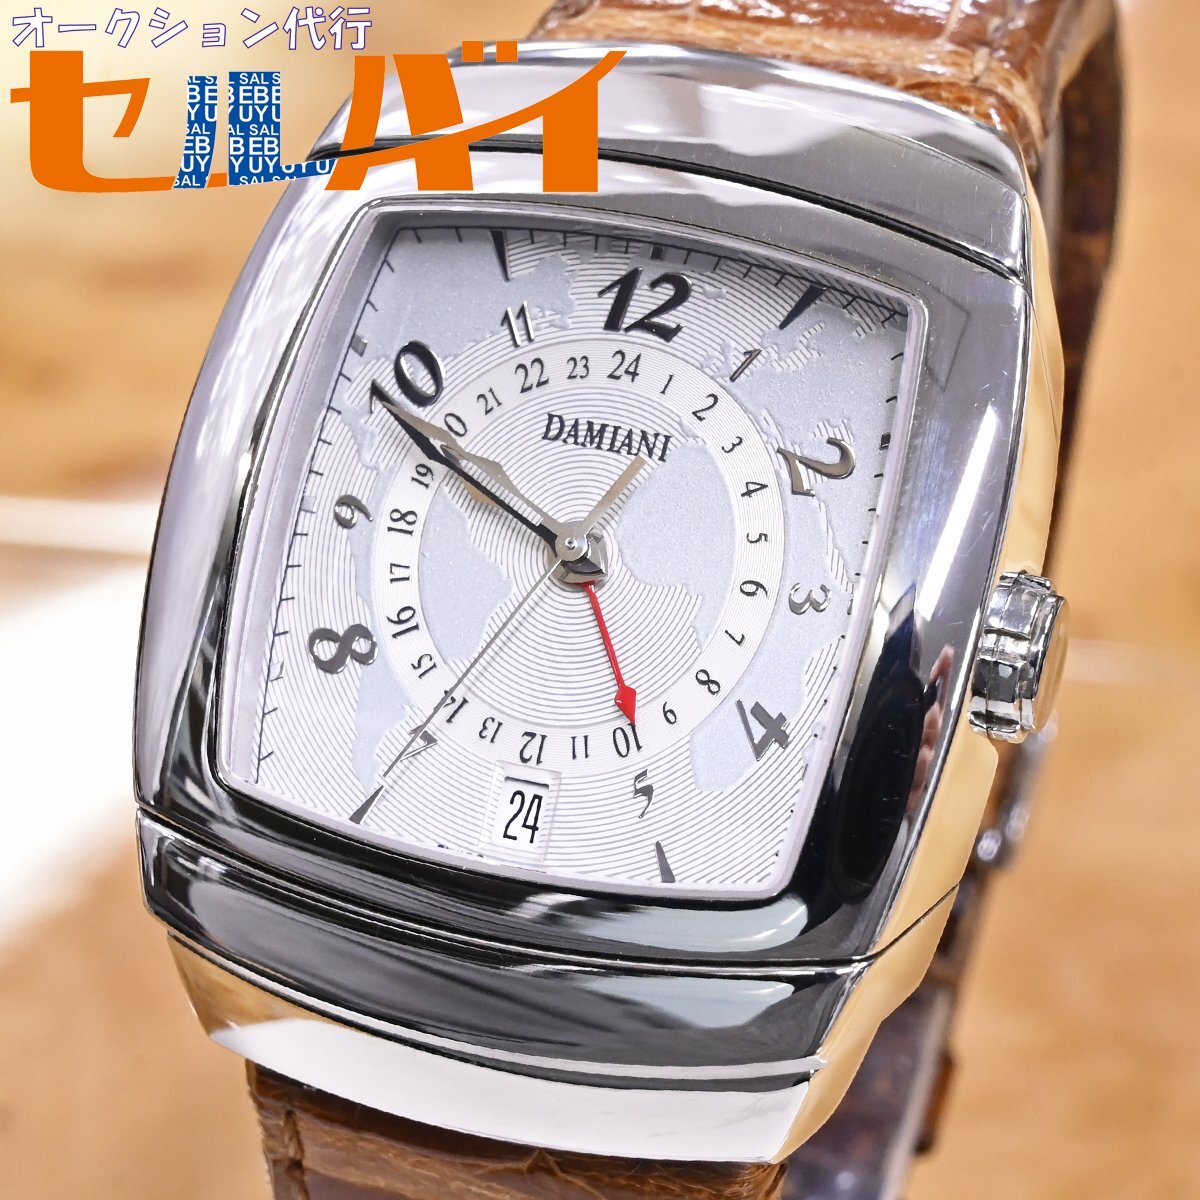  подлинный товар первоклассный товар Damiani высшее редкий XXL размер GMT автоматический мужской часы мужской самозаводящиеся часы наручные часы оригинальный двусторонний черный ko ремень DAMIANI